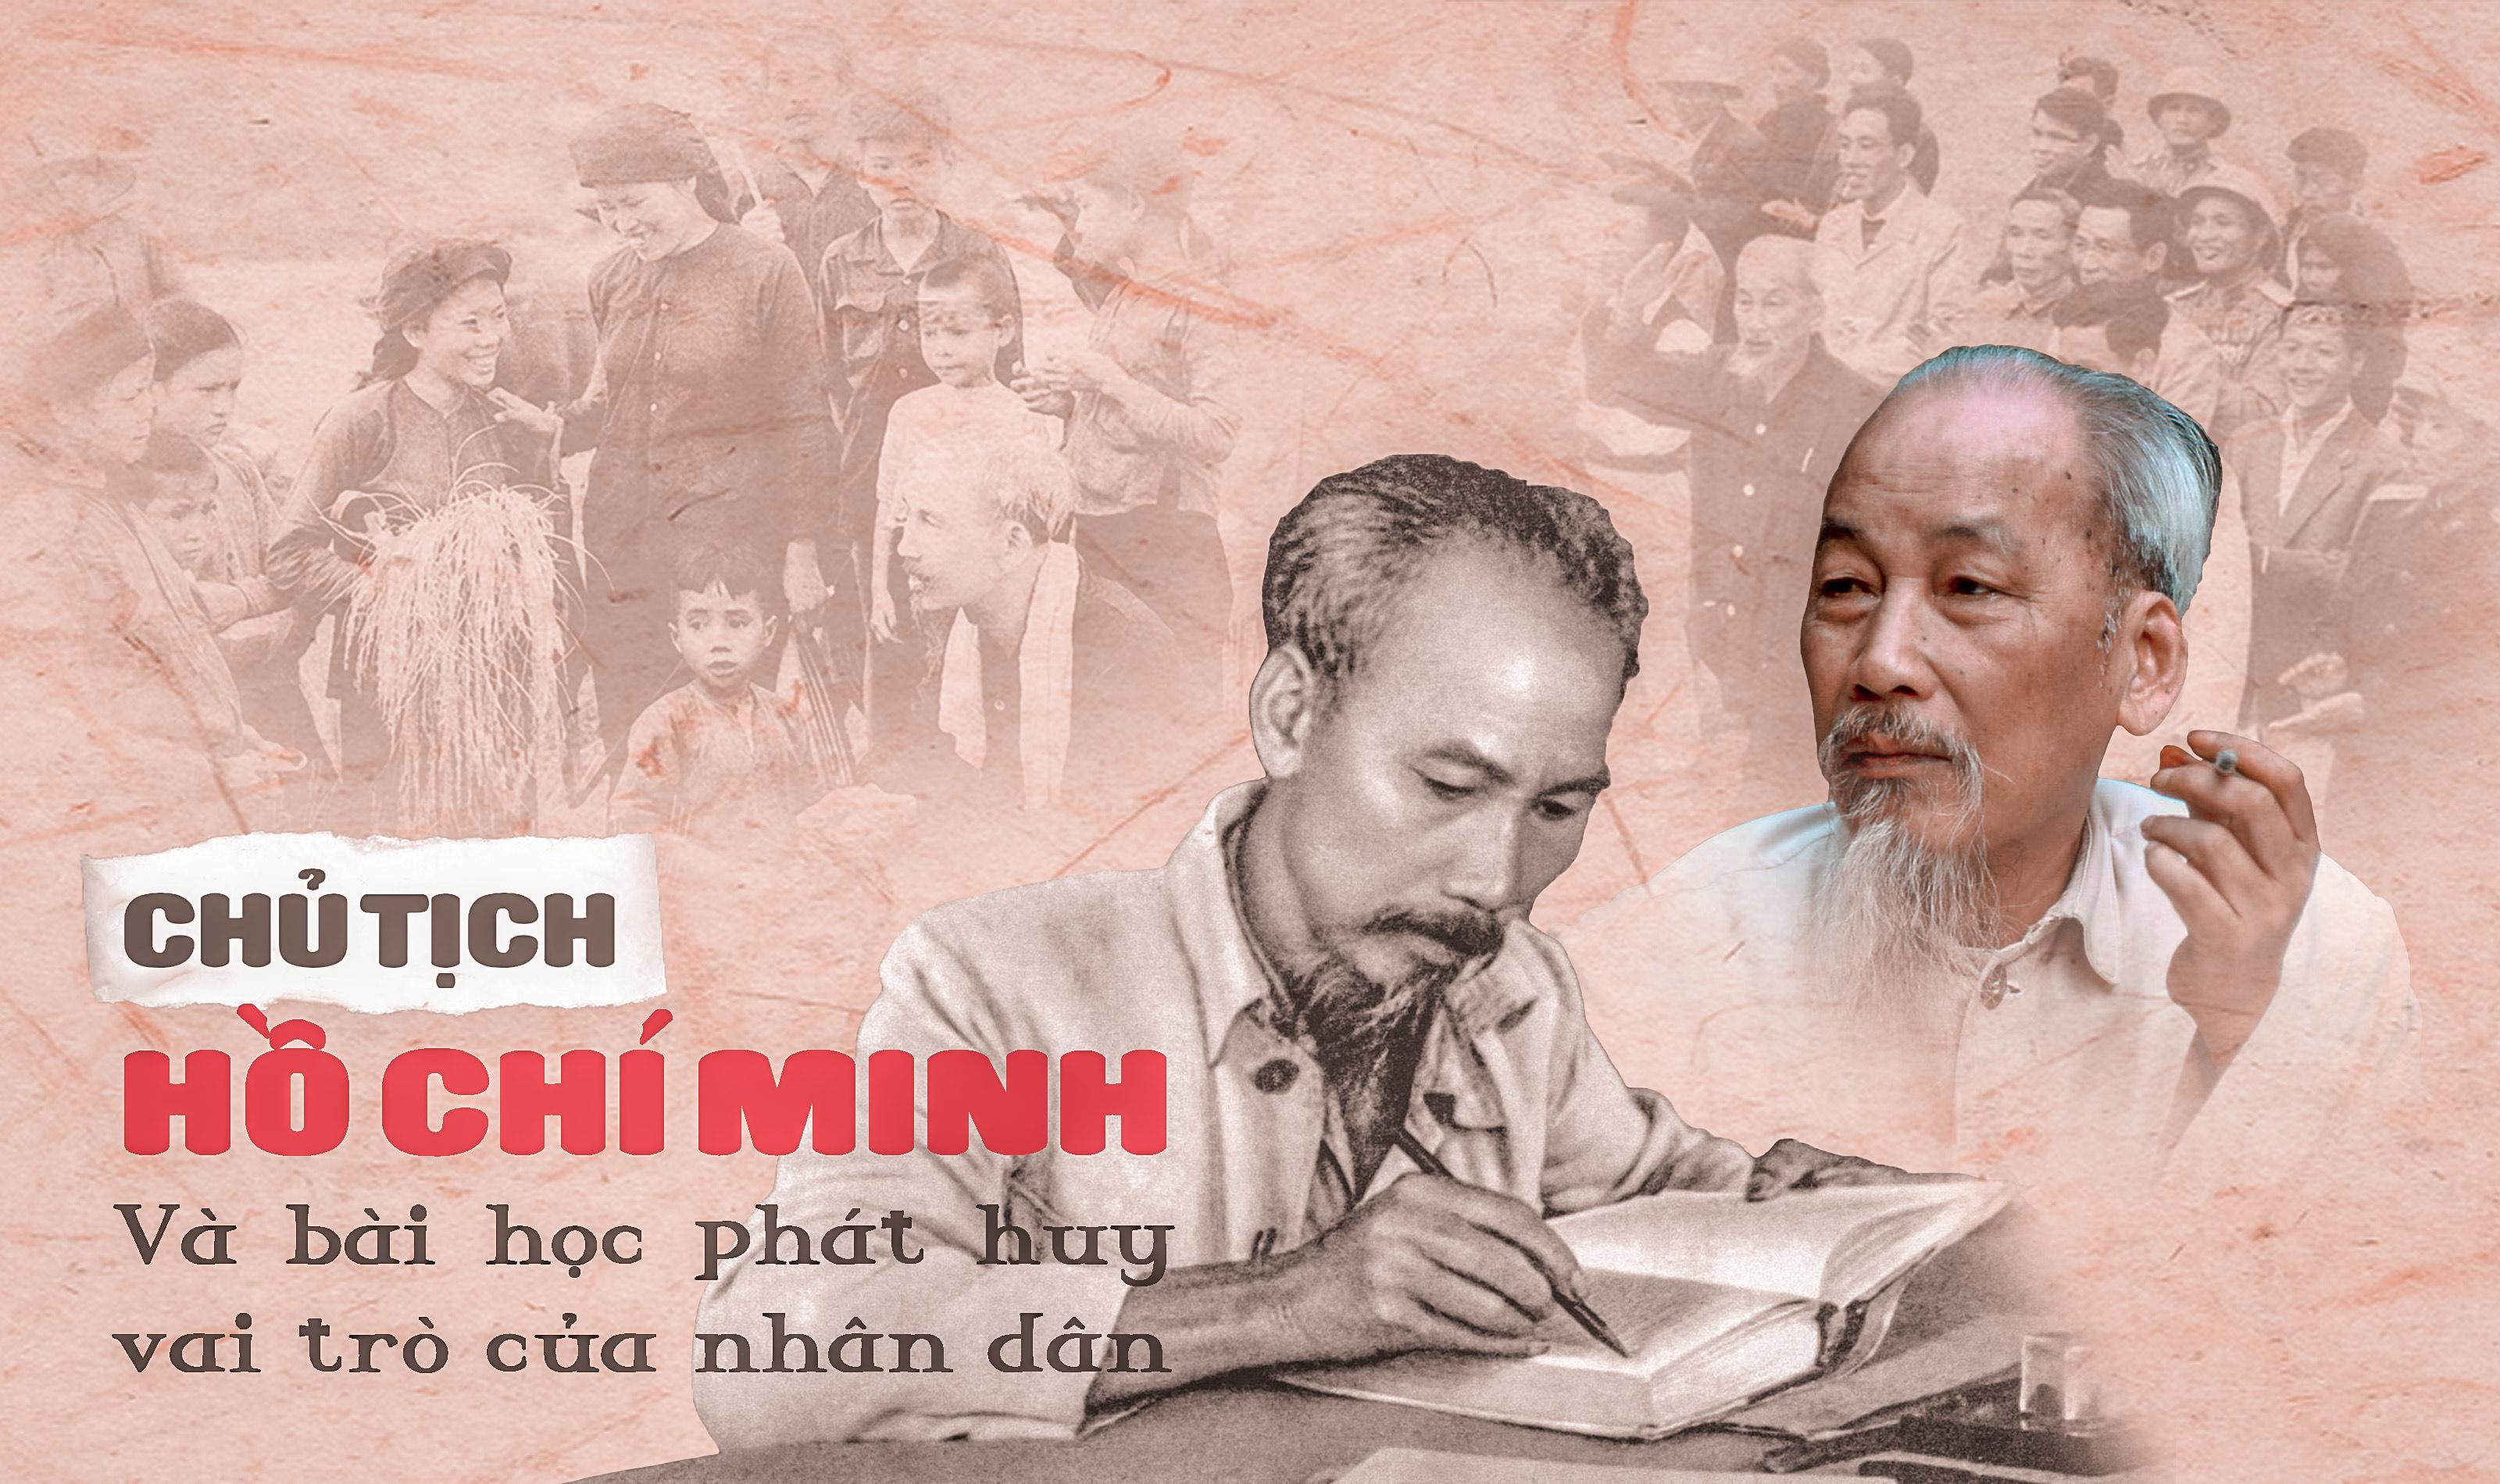 Chủ tịch Hồ Chí Minh và bài học phát huy vai trò của nhân dân